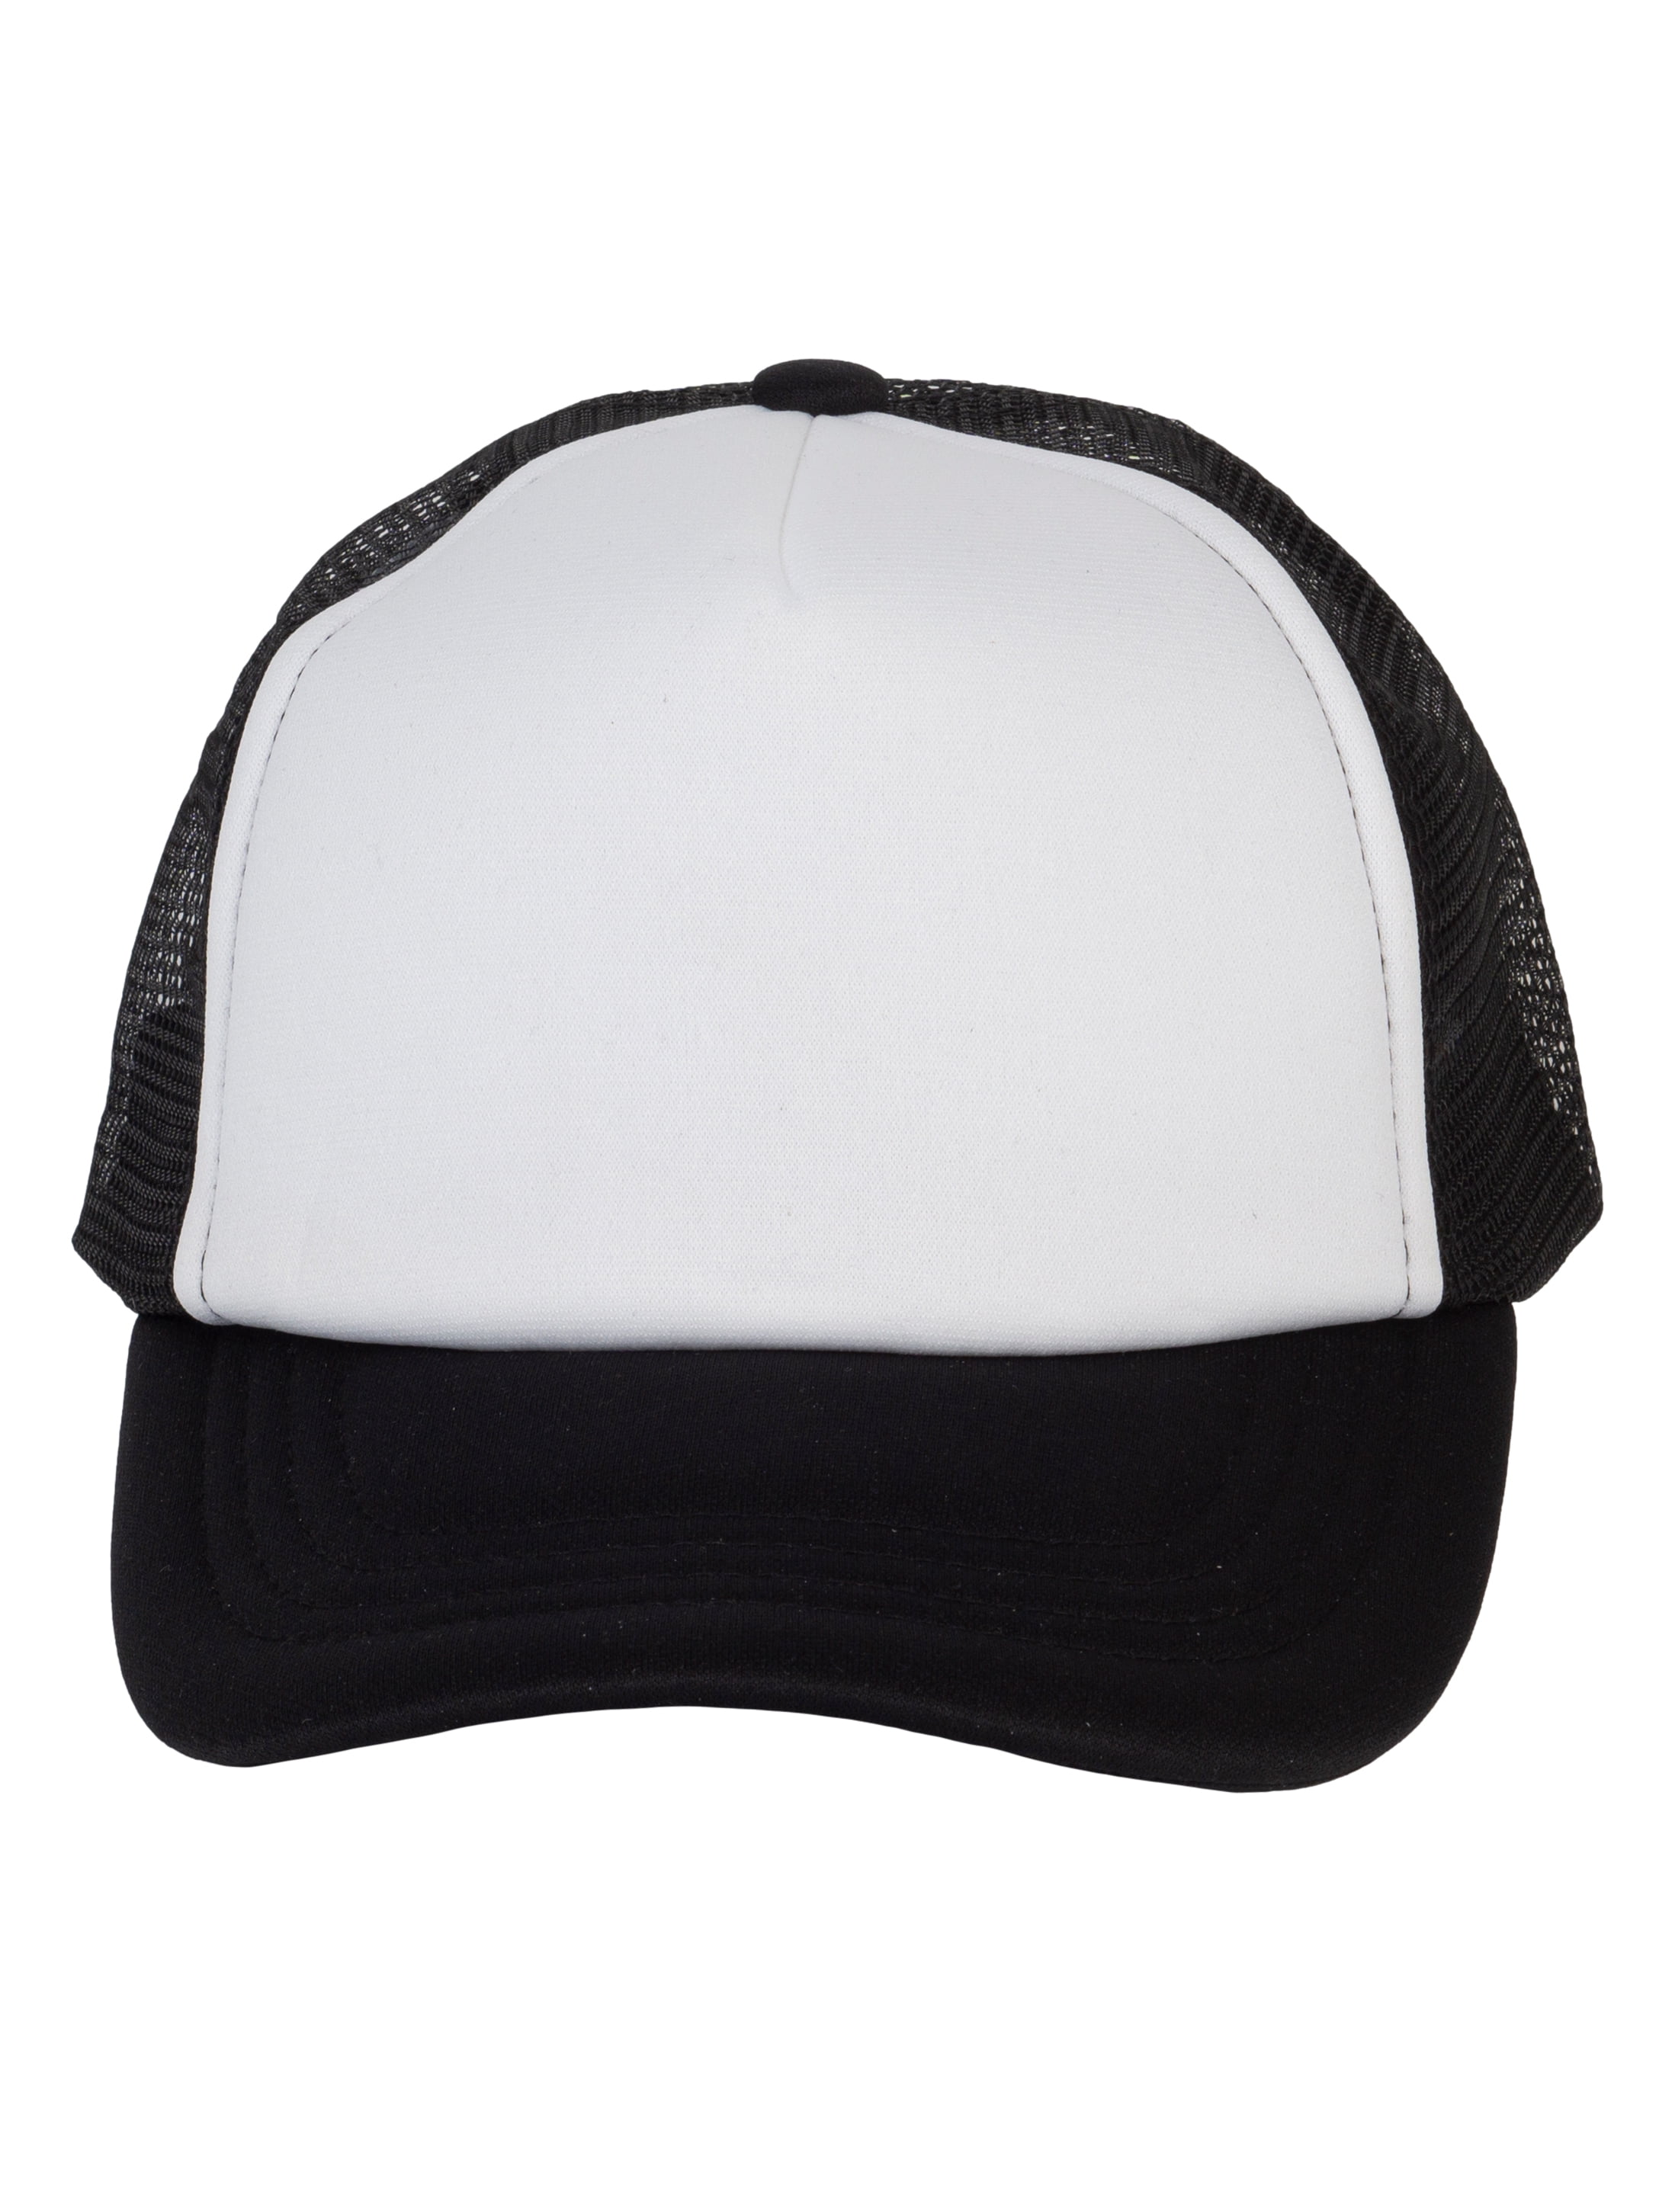 Top Headwear Youth Trucker Cap - Snapback Kids Baseball Hat White/Black